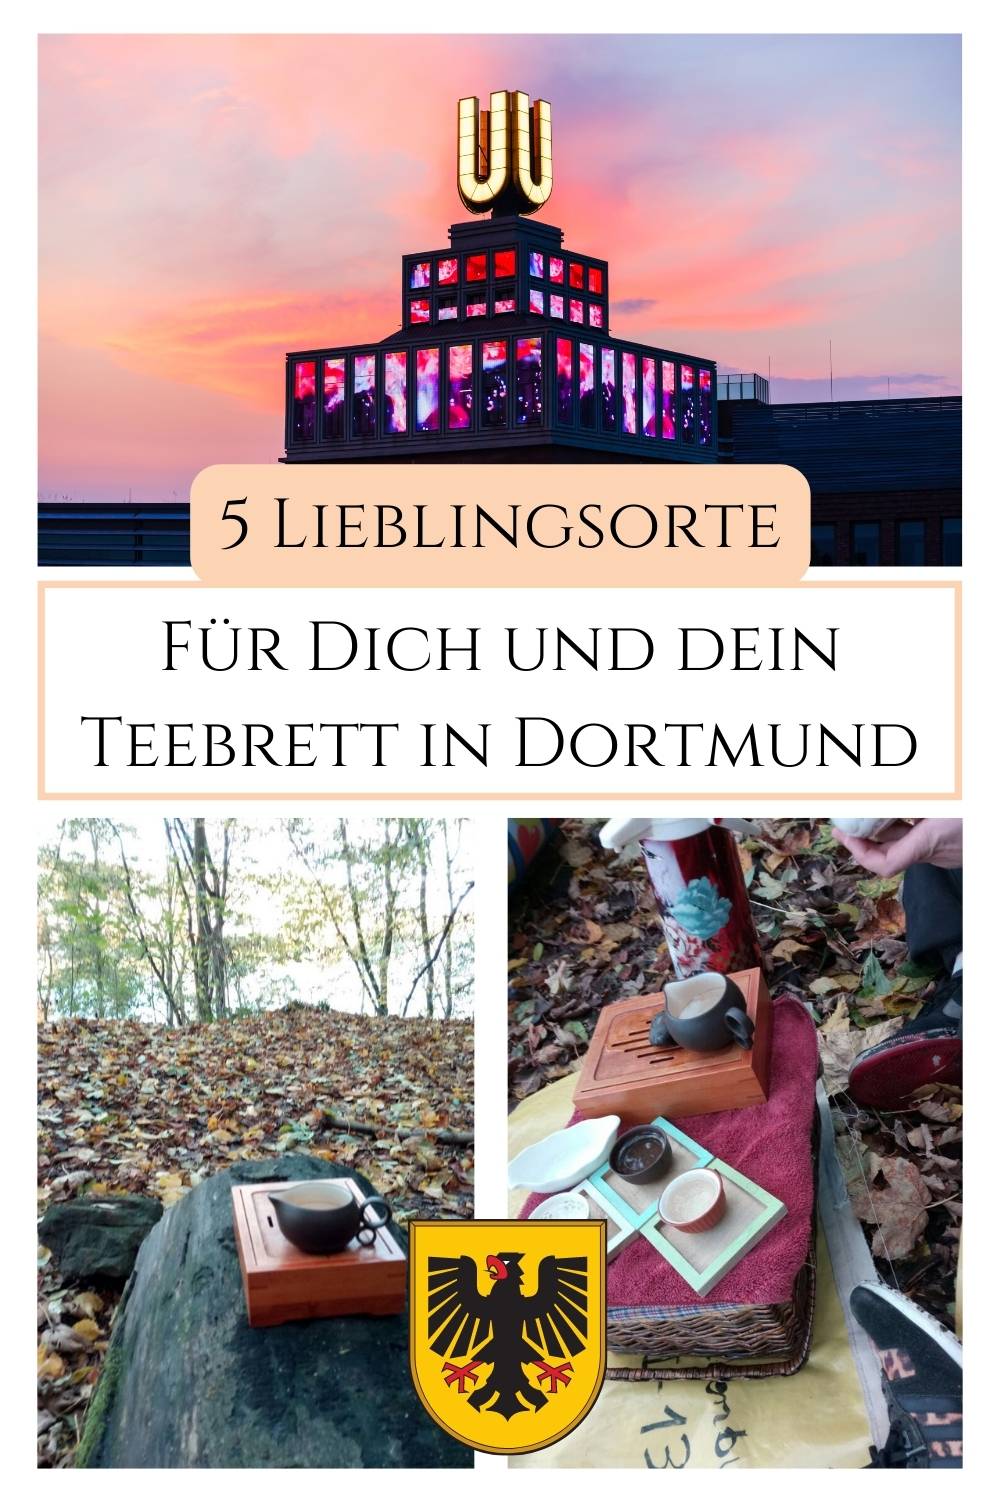 Lieblingsorte mit Teebrett in Dortmund - Tee trinken in der Natur im Ruhrgebiet